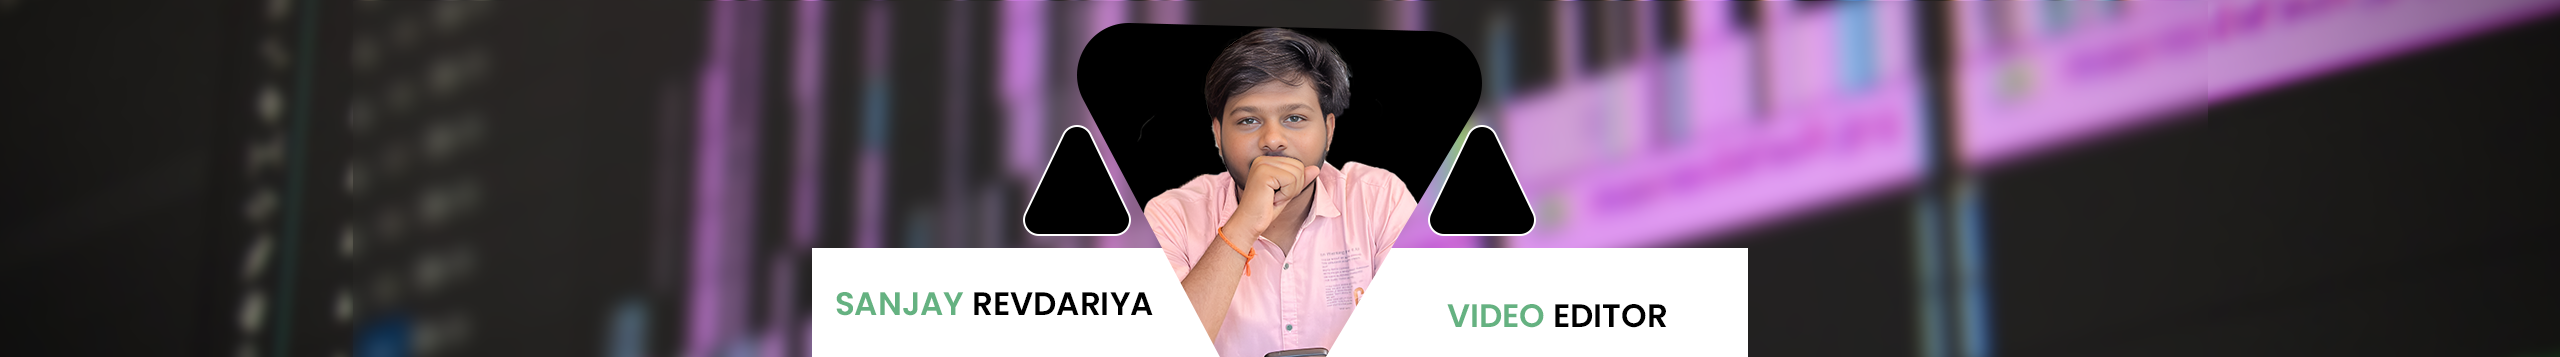 Sanjay Revadariya profil başlığı